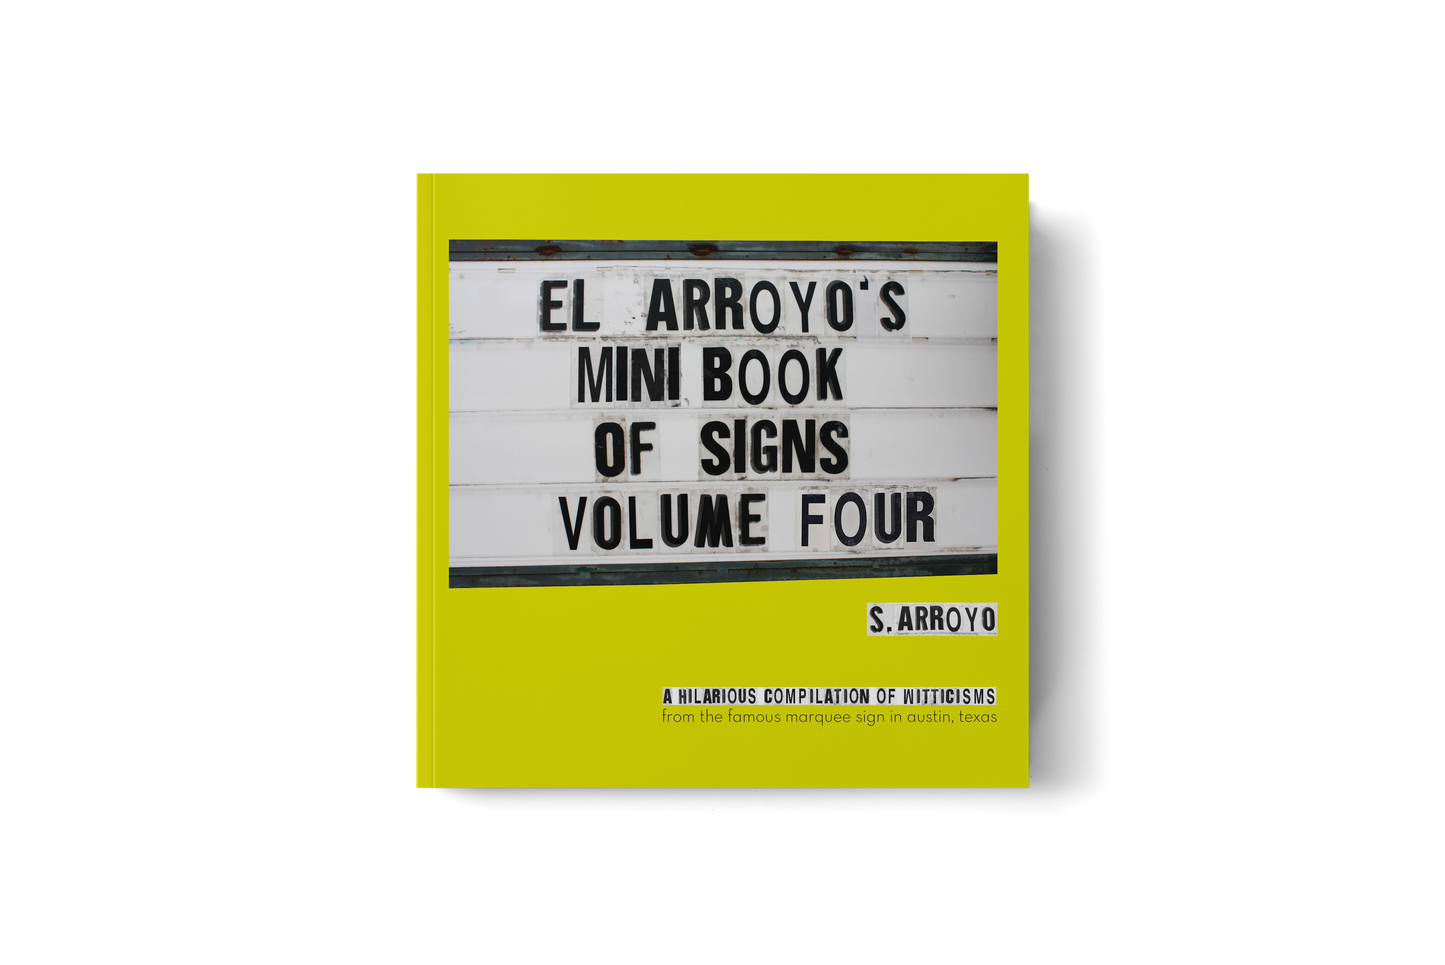 El Arroyo - El Arroyo's Mini Book of Signs Volume Four